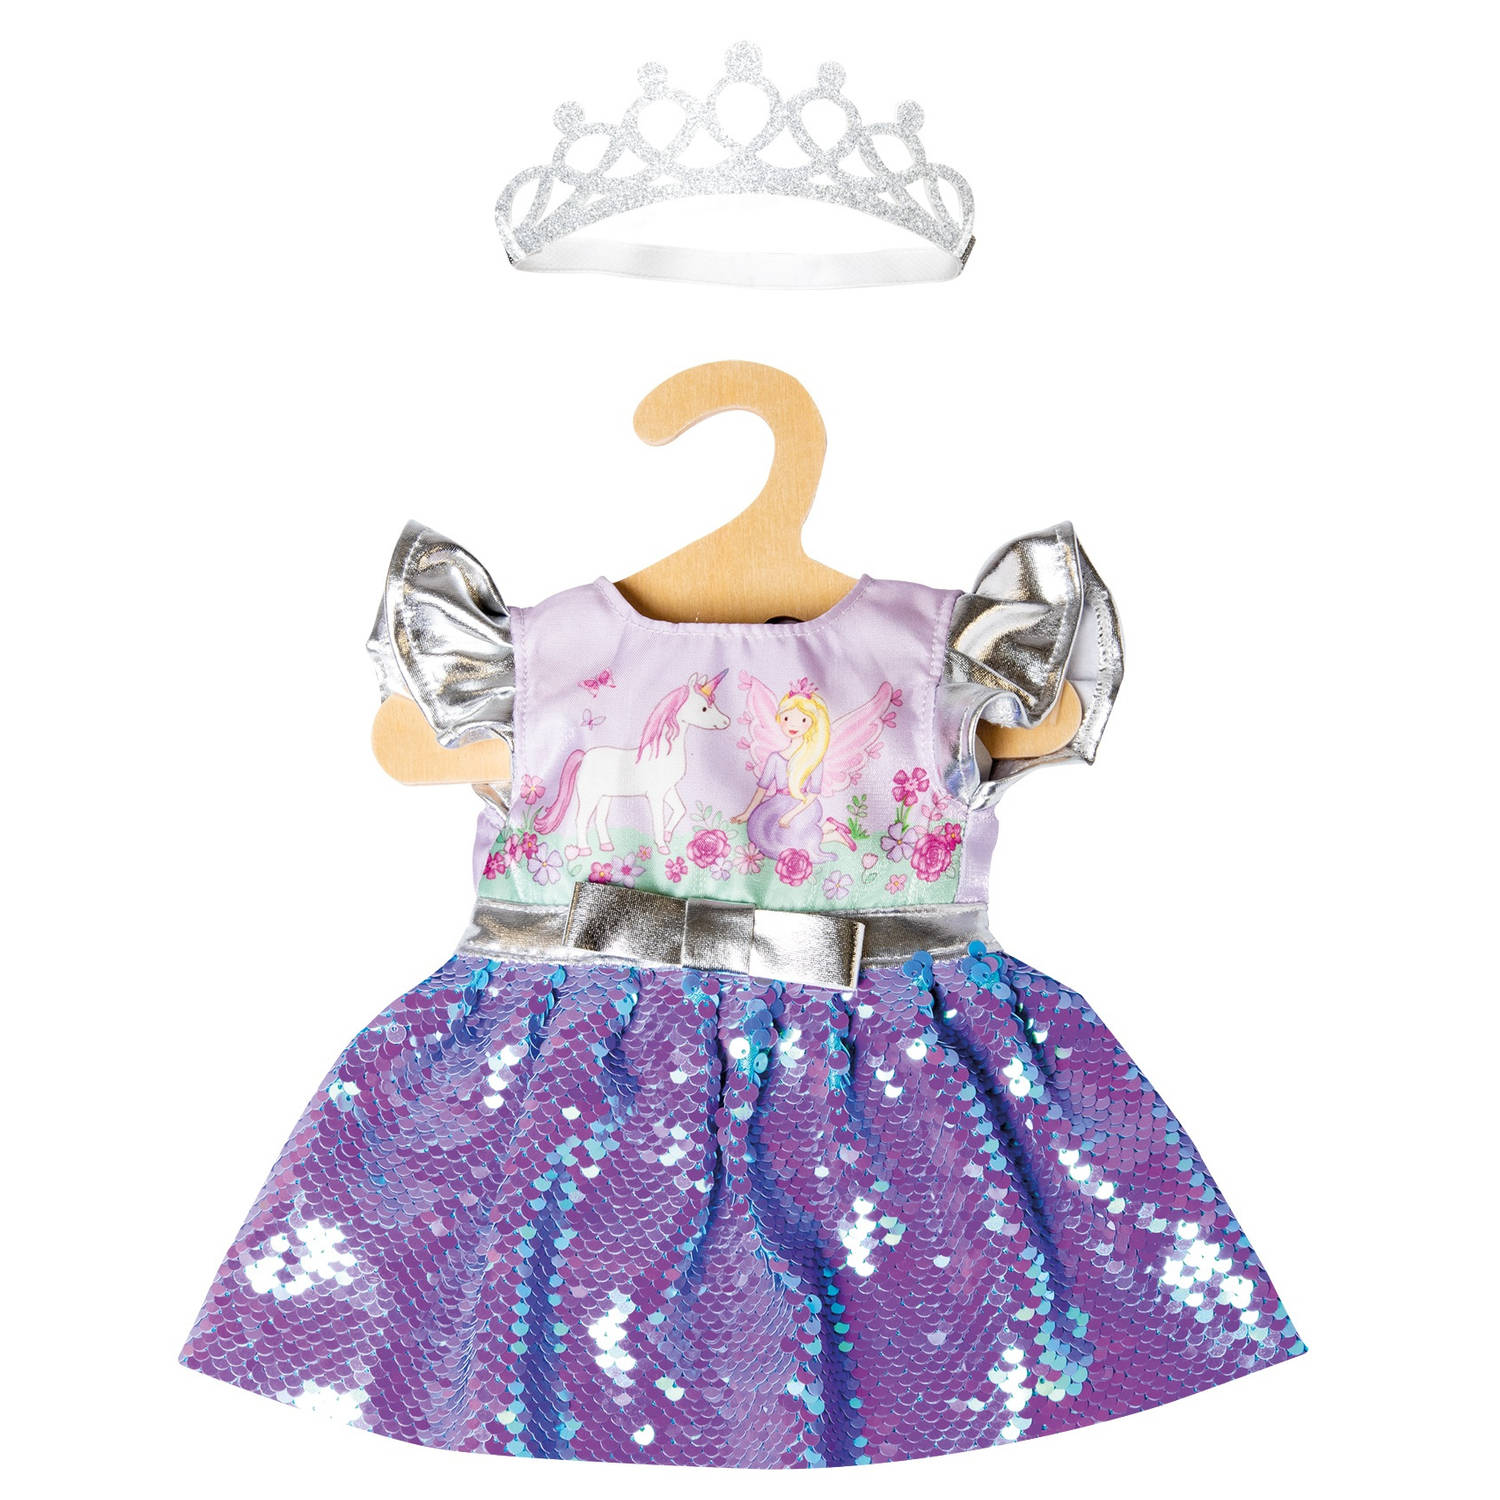 Heless babypoppenkleding jurk junior 28-35 cm 2-delig